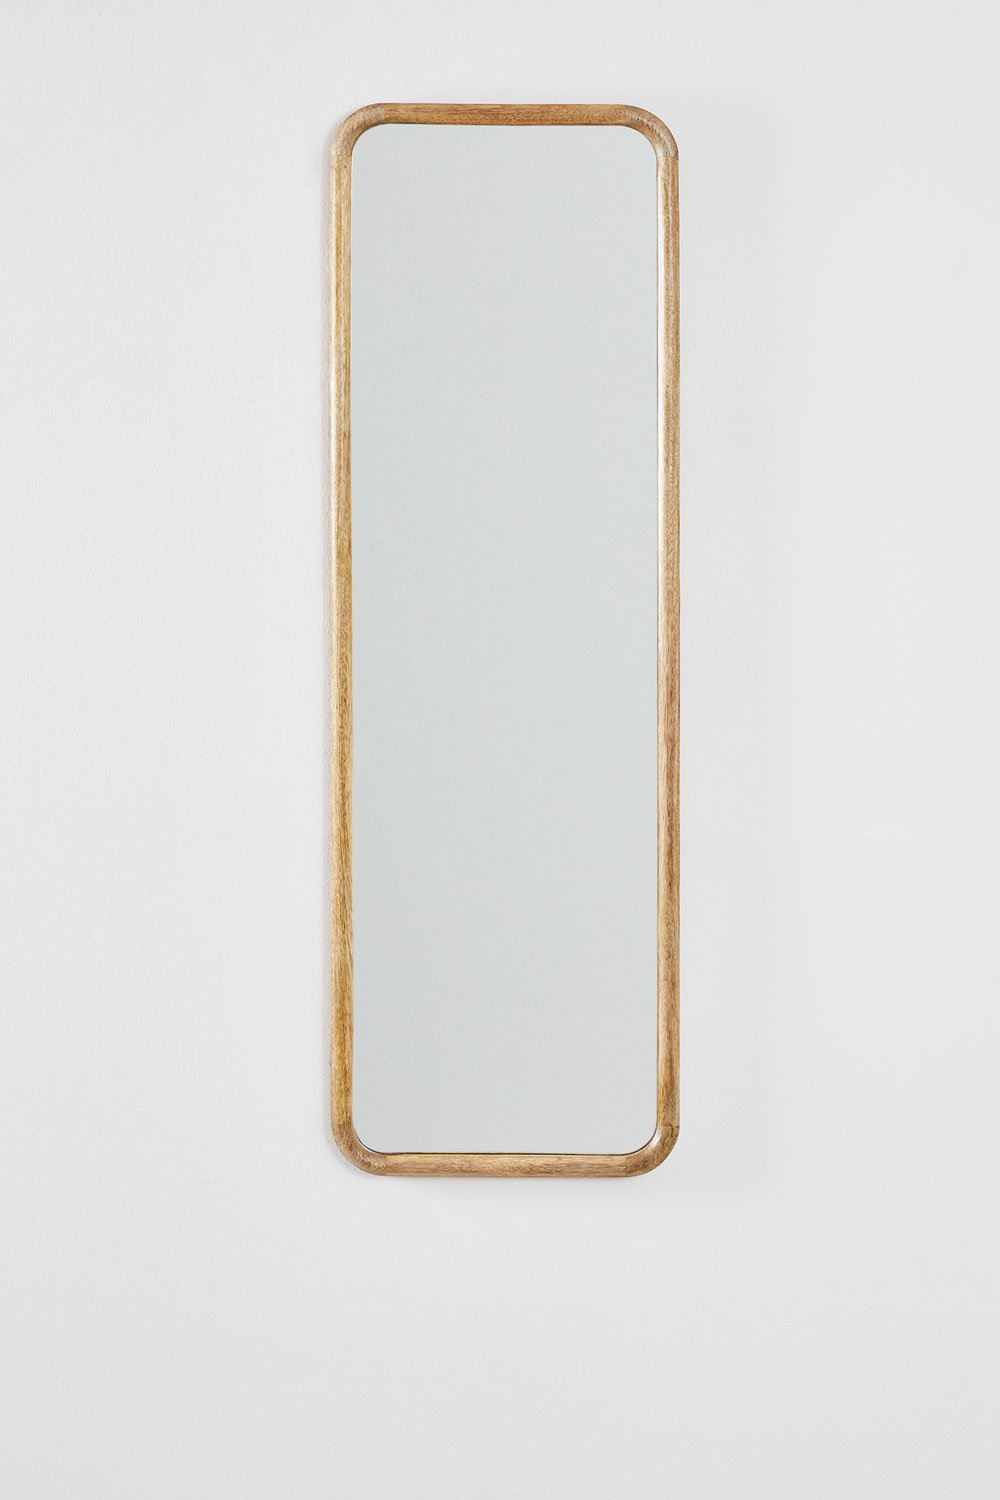 Specchio da parete rettangolare in legno di mango (36,5x115 cm) Mirtzia  , immagine della galleria 2